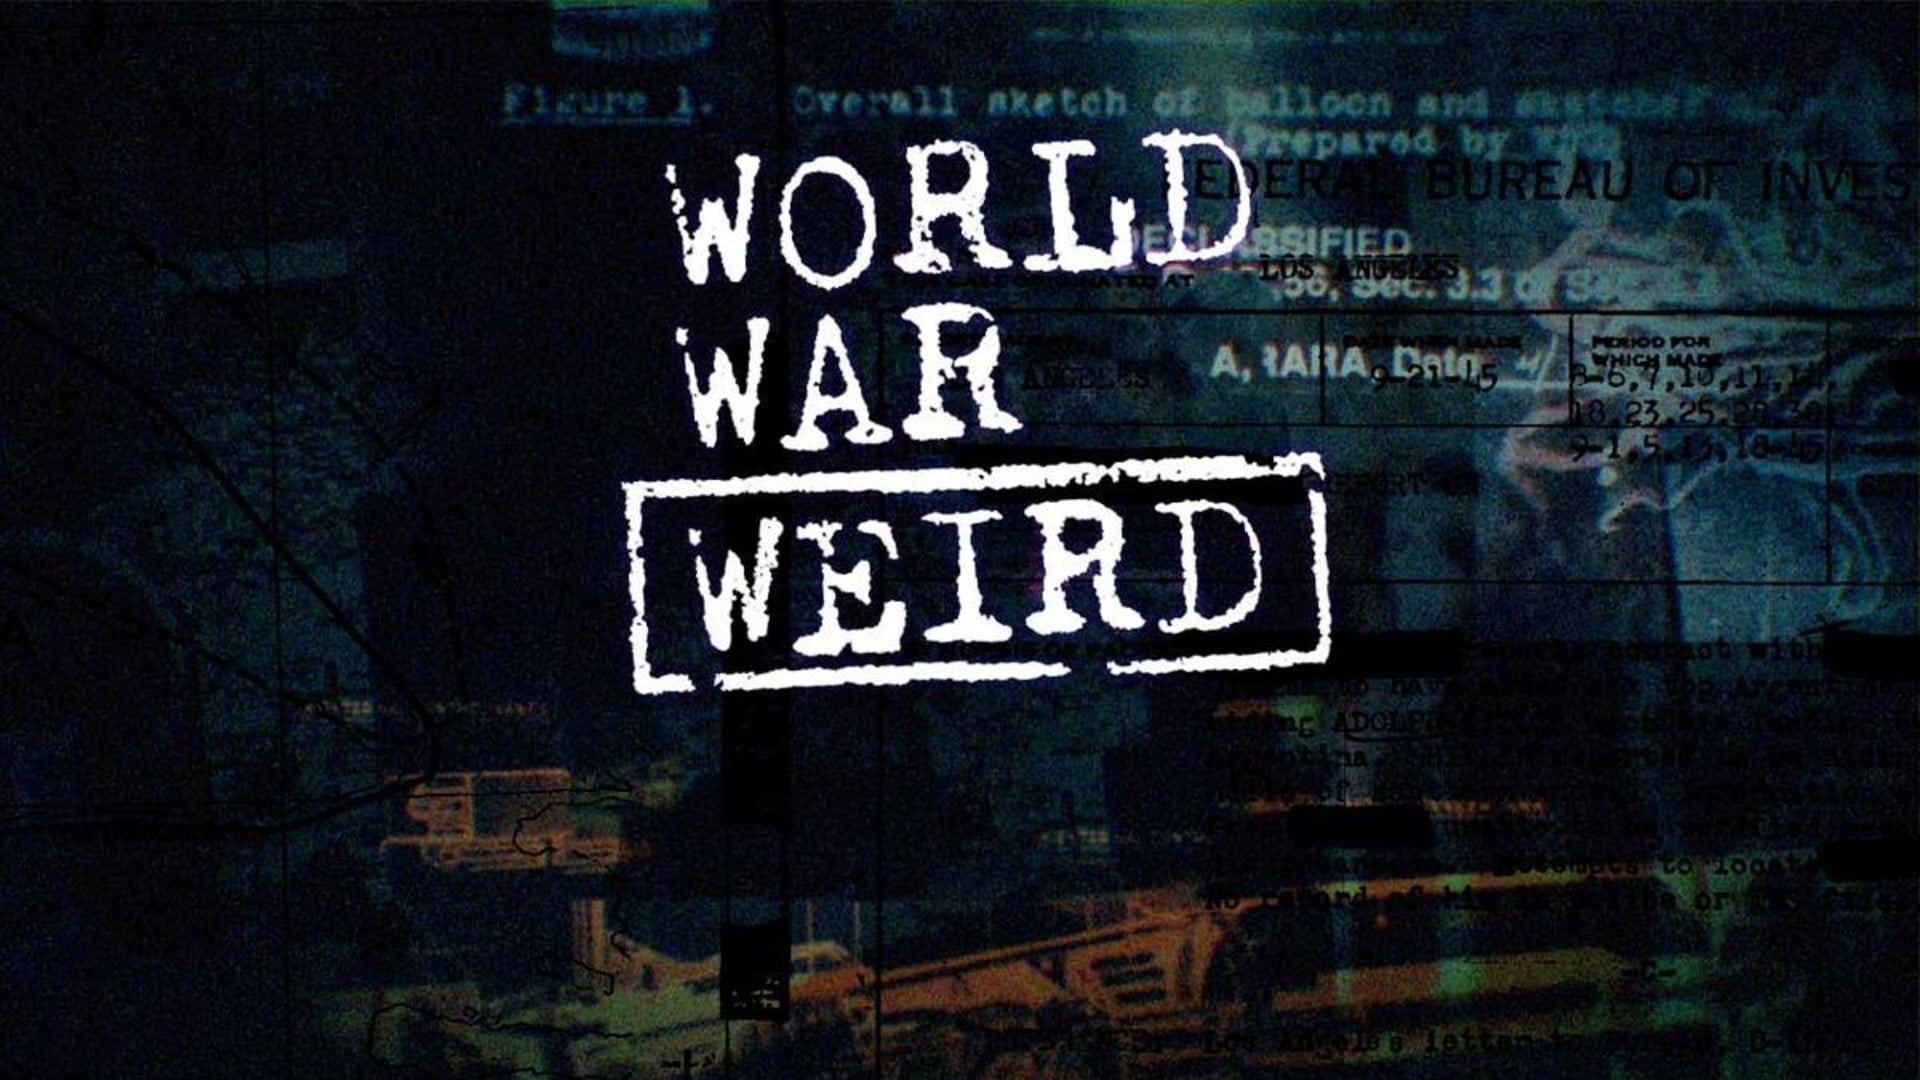 Nazi World War Weird